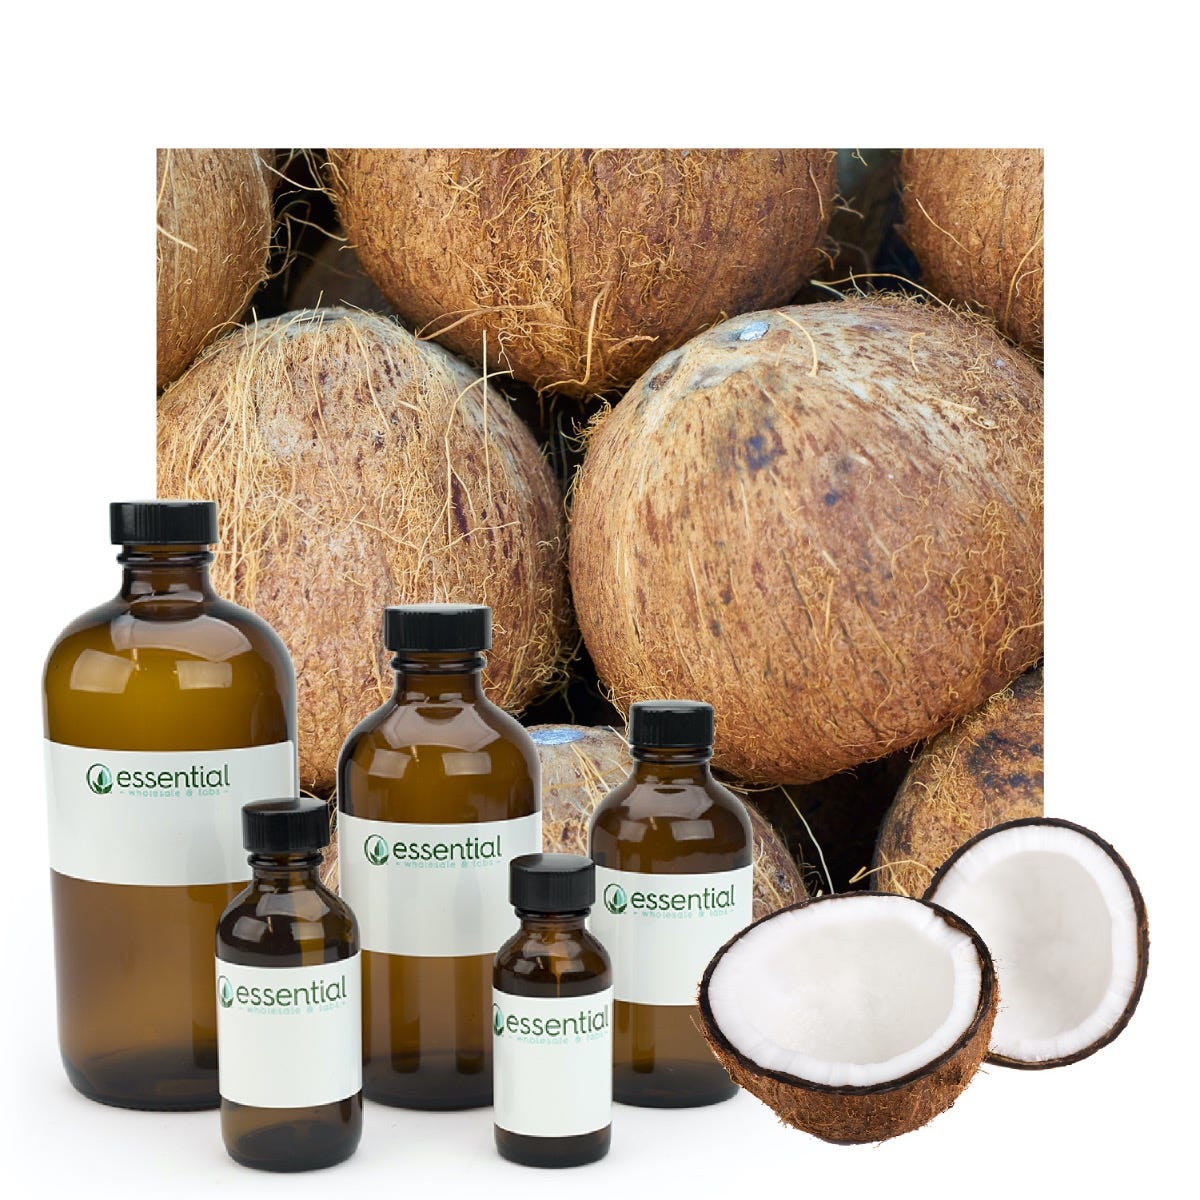 Good Essential 10ml Oils - Coconut Fragrance Oil - 0.33 Fluid